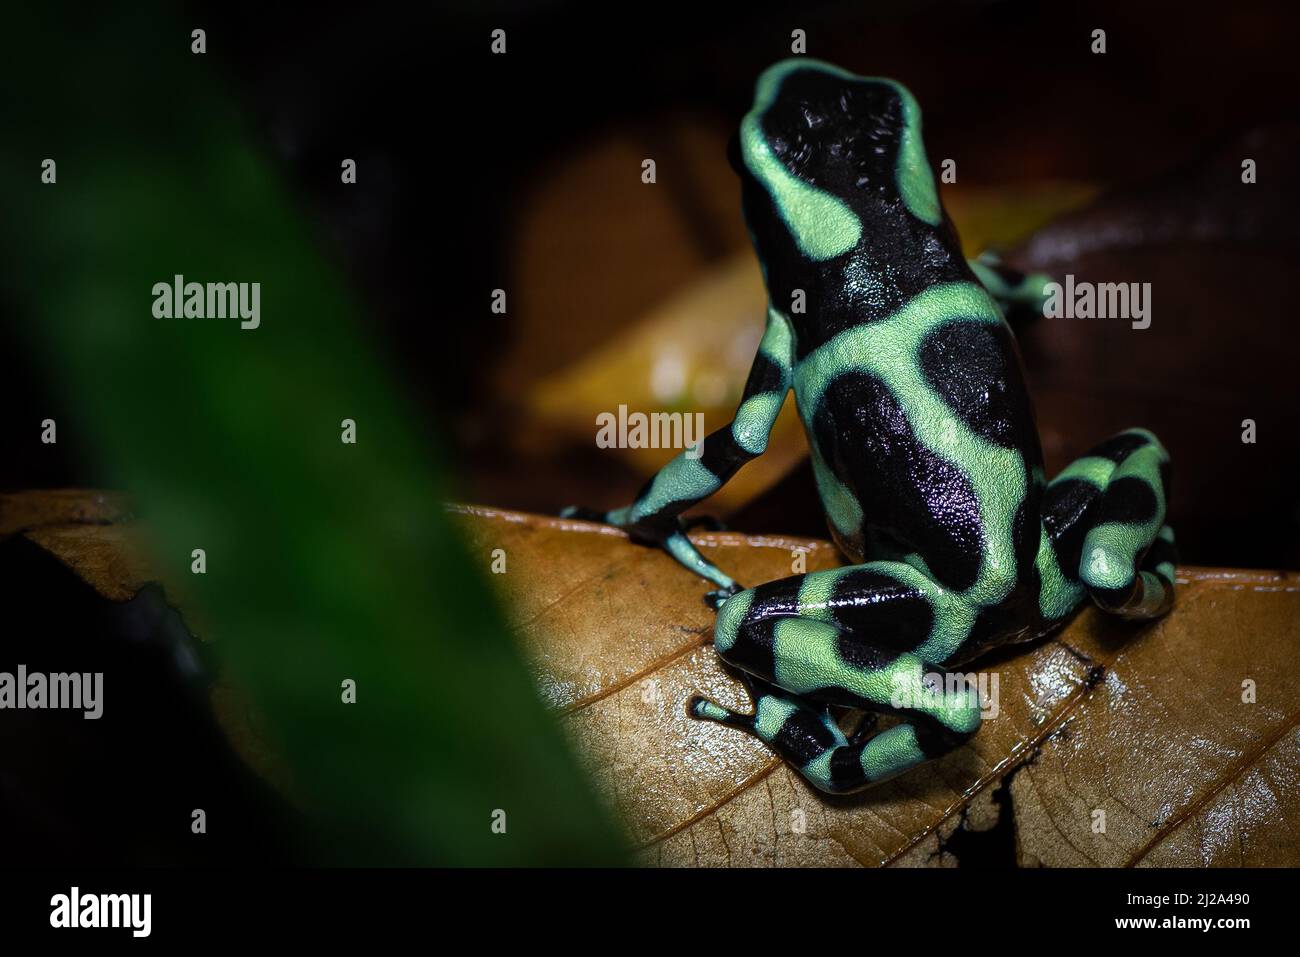 Patrones de colores en la parte posterior de una rana de dardos de veneno verde y negro (Dendrobates auratus) fotografiada en el subcrecimiento de una selva tropical. Foto de stock